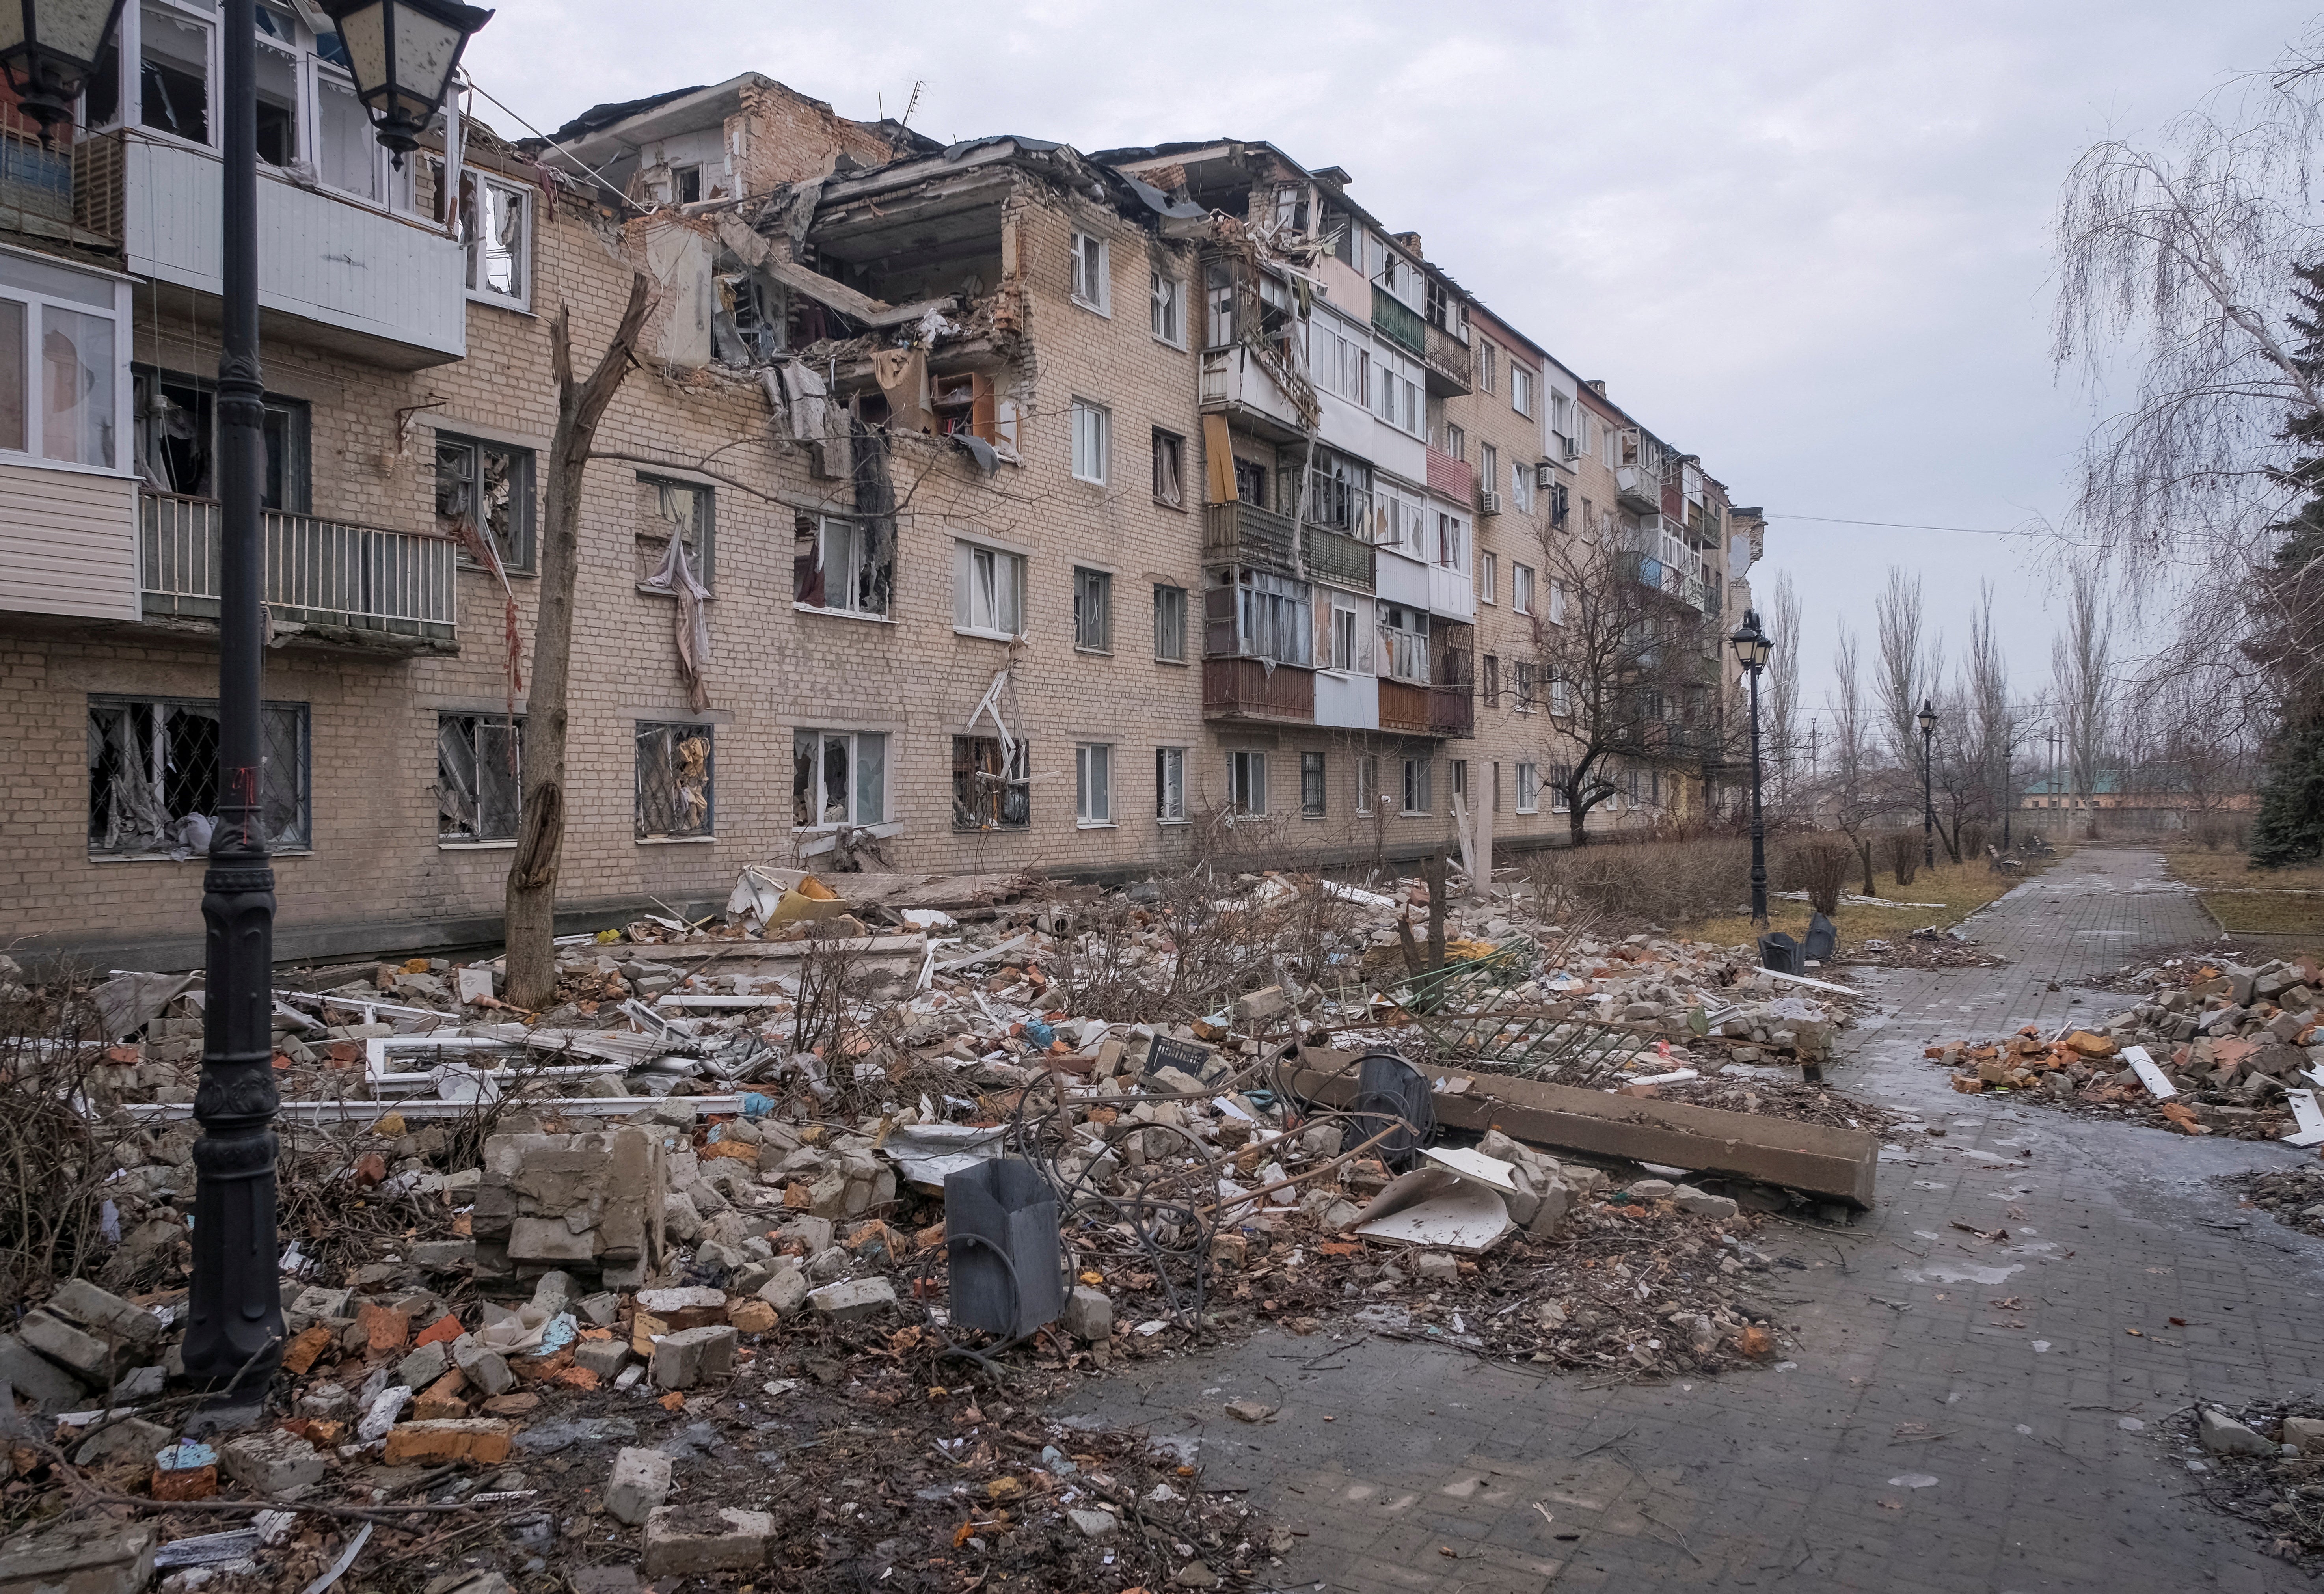 Russia’s invasion has decimated cities across Ukraine